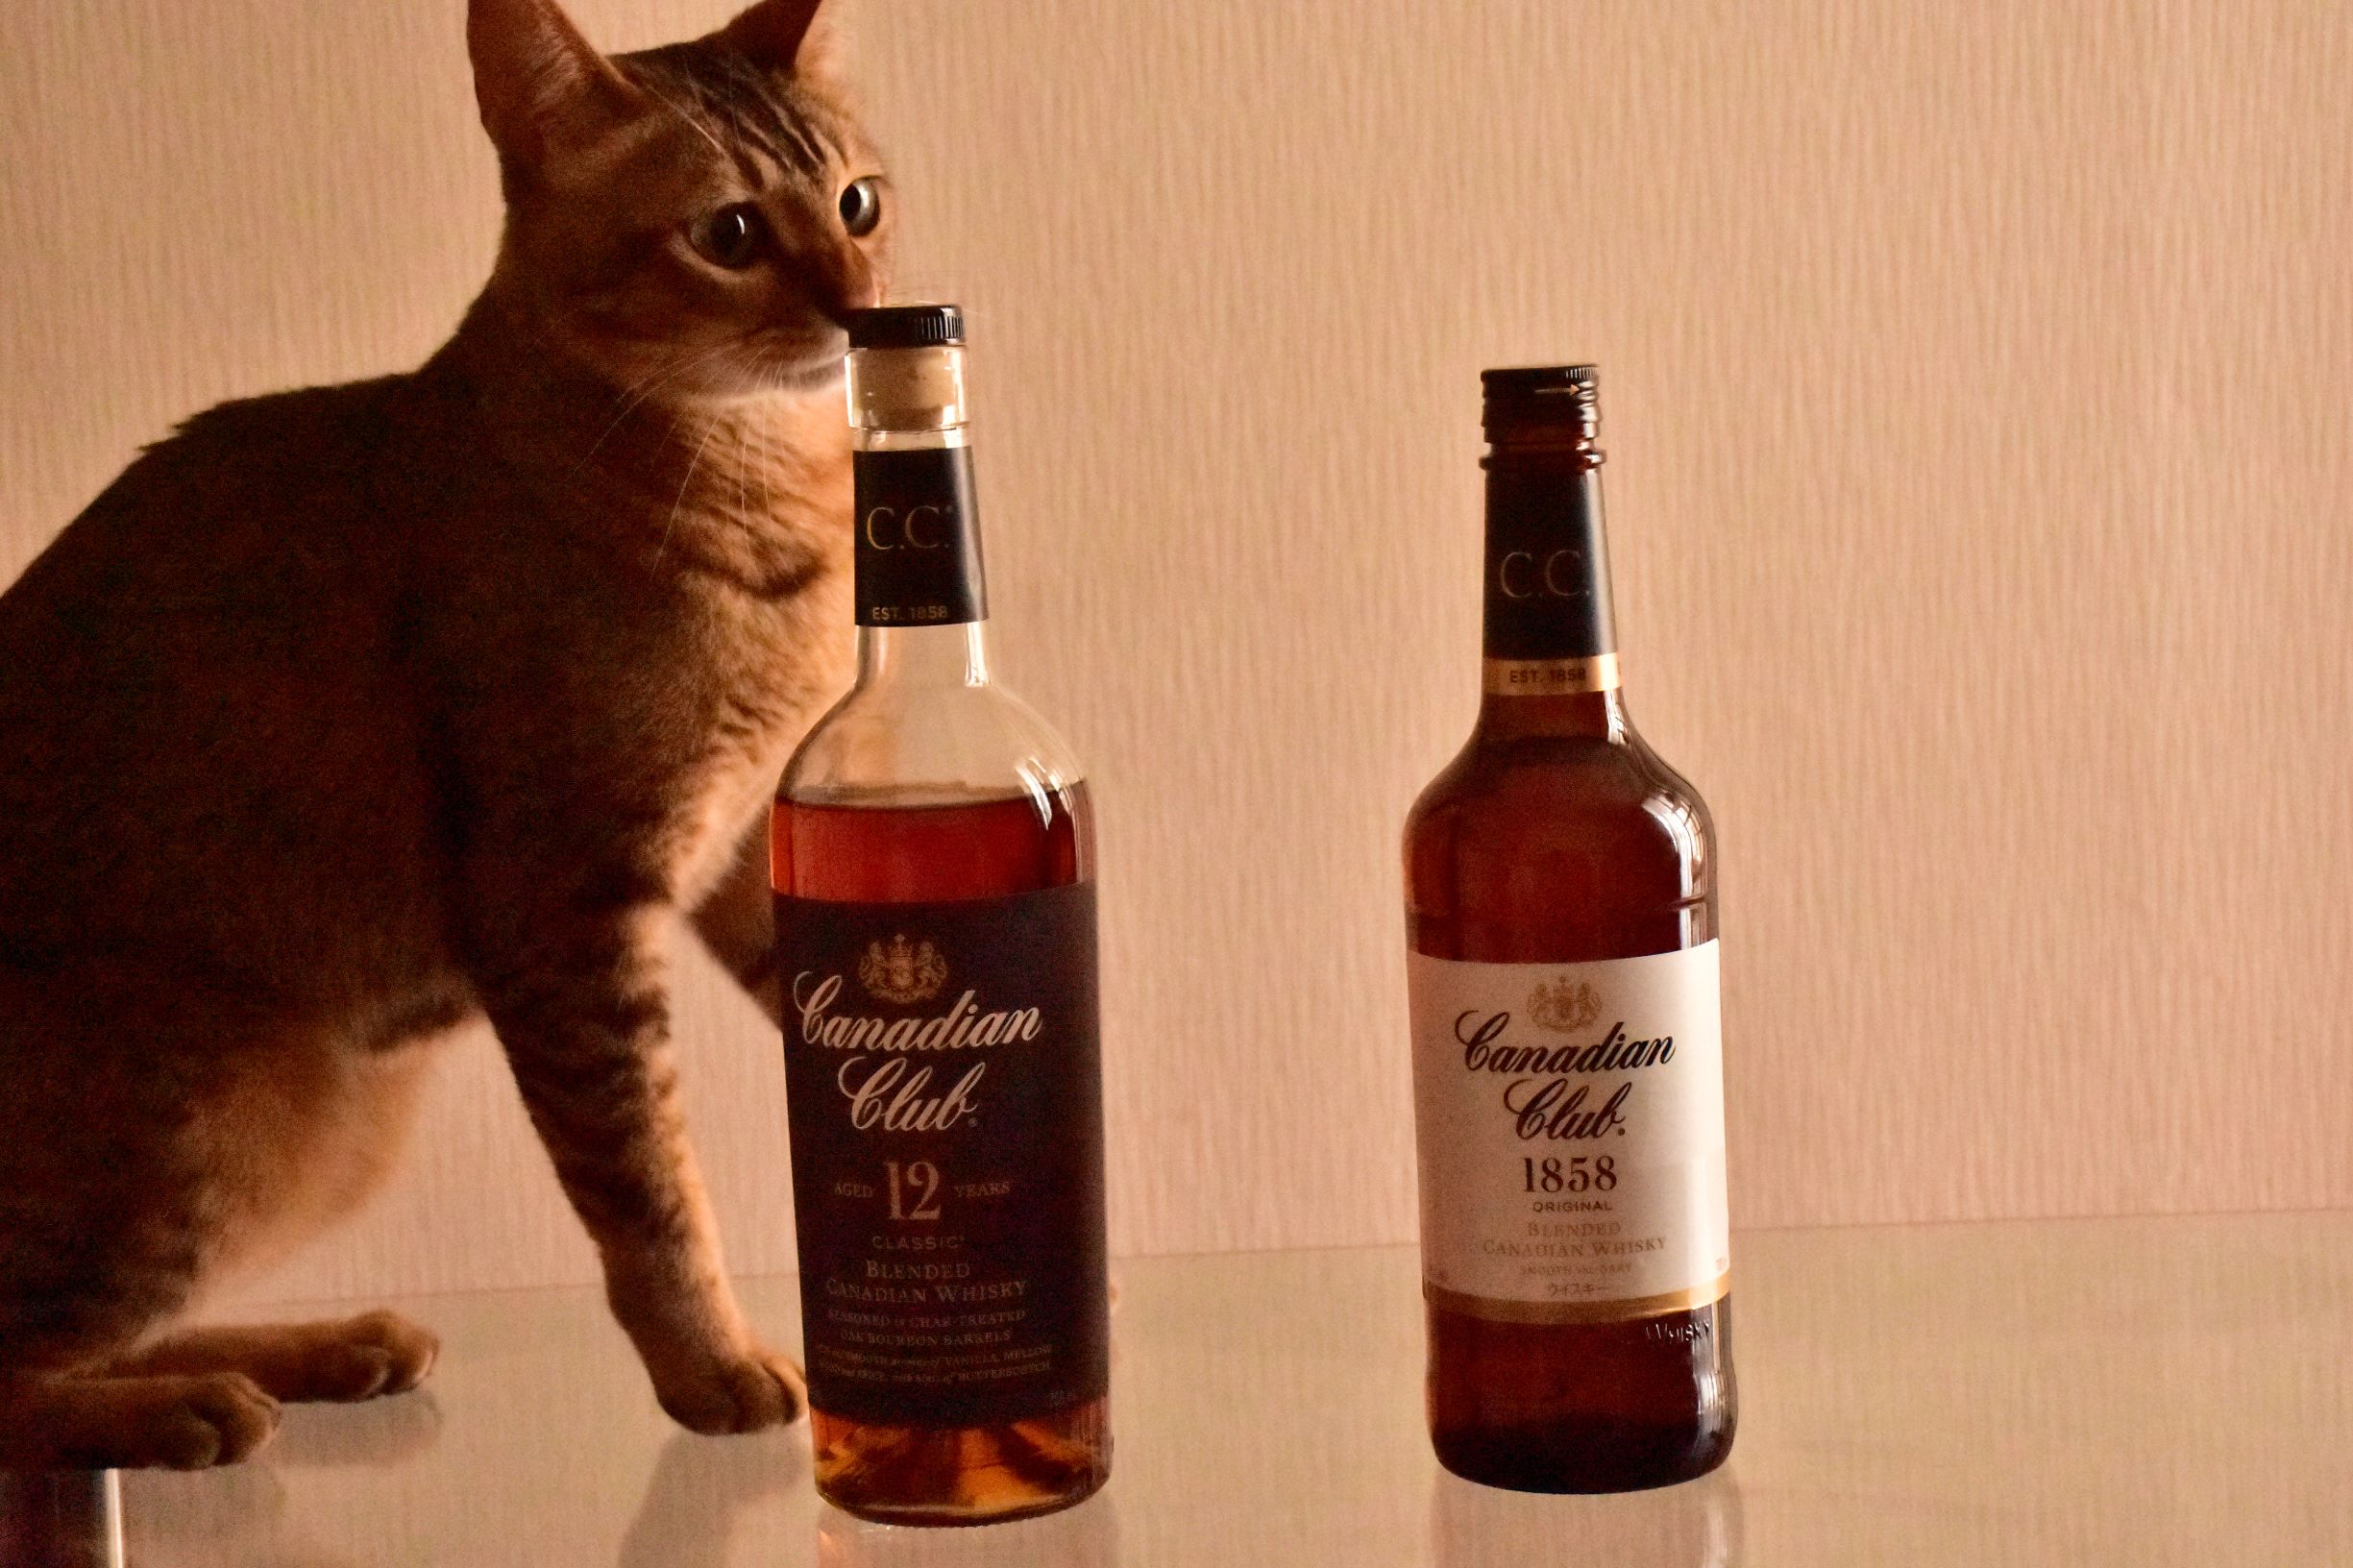 カナディアンクラブ 飲んでみた感想と評価 カナディアンウイスキーの歴史・特徴を深堀 - Whisky Cat